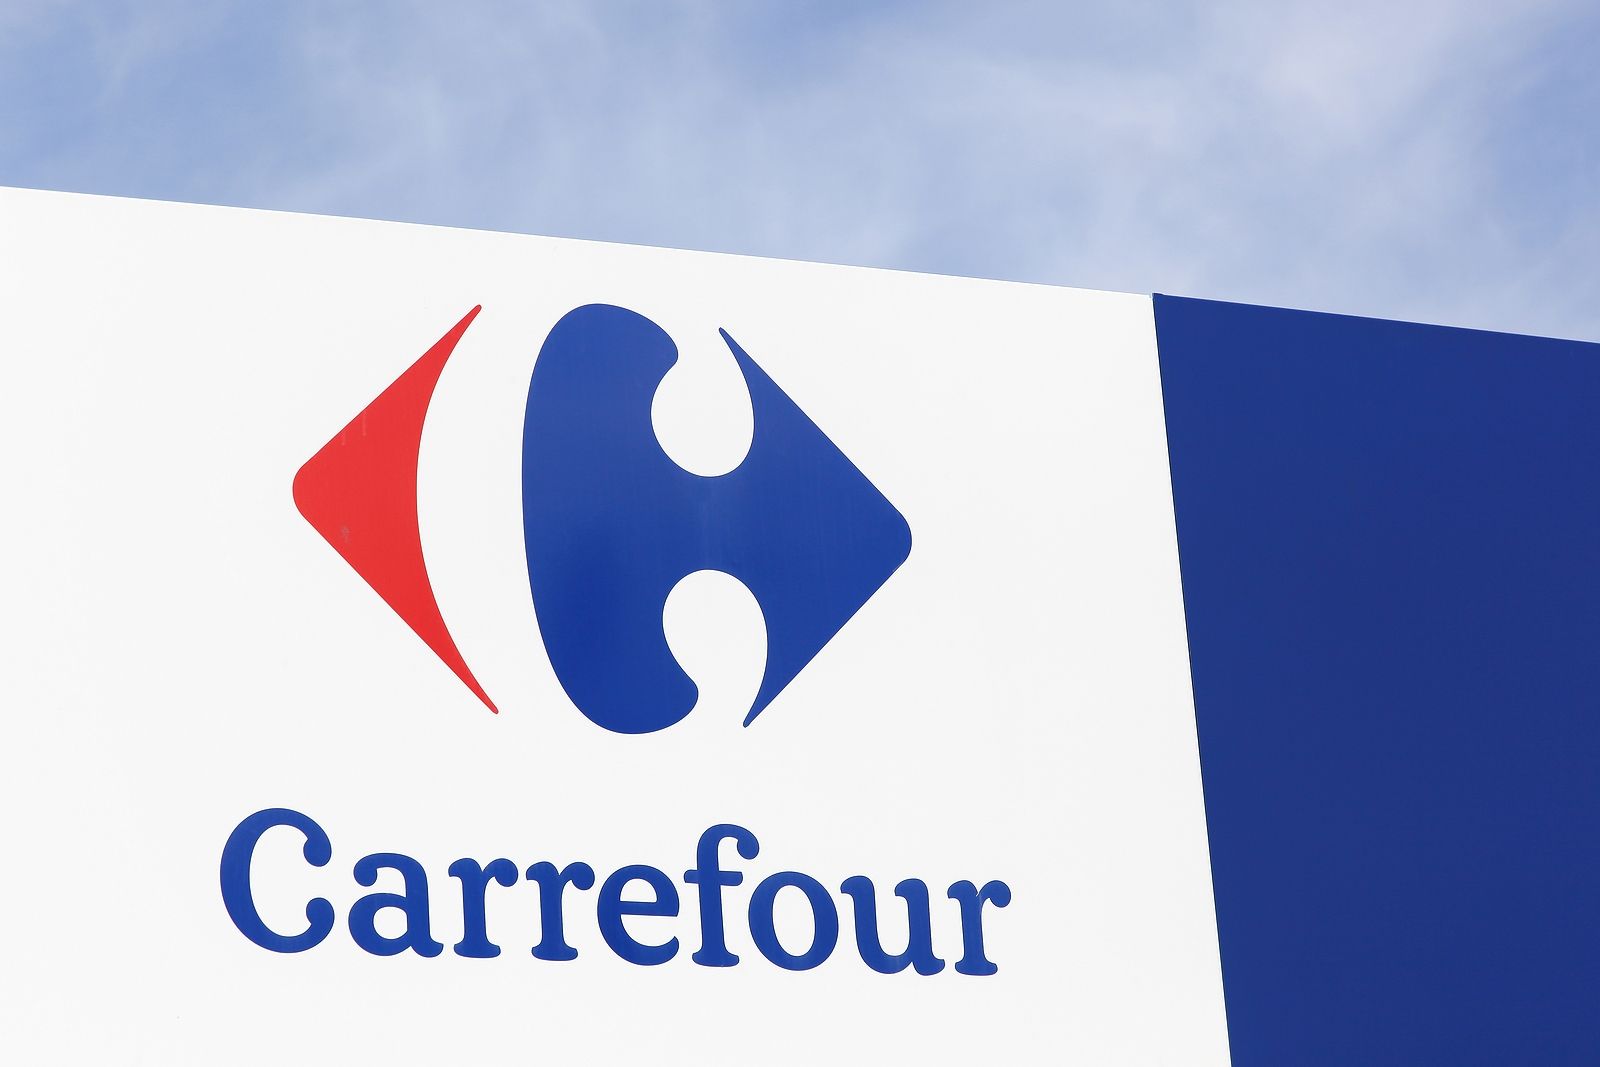 La financiera de Carrefour sufre un ciberataque que roba datos personales de sus clientes